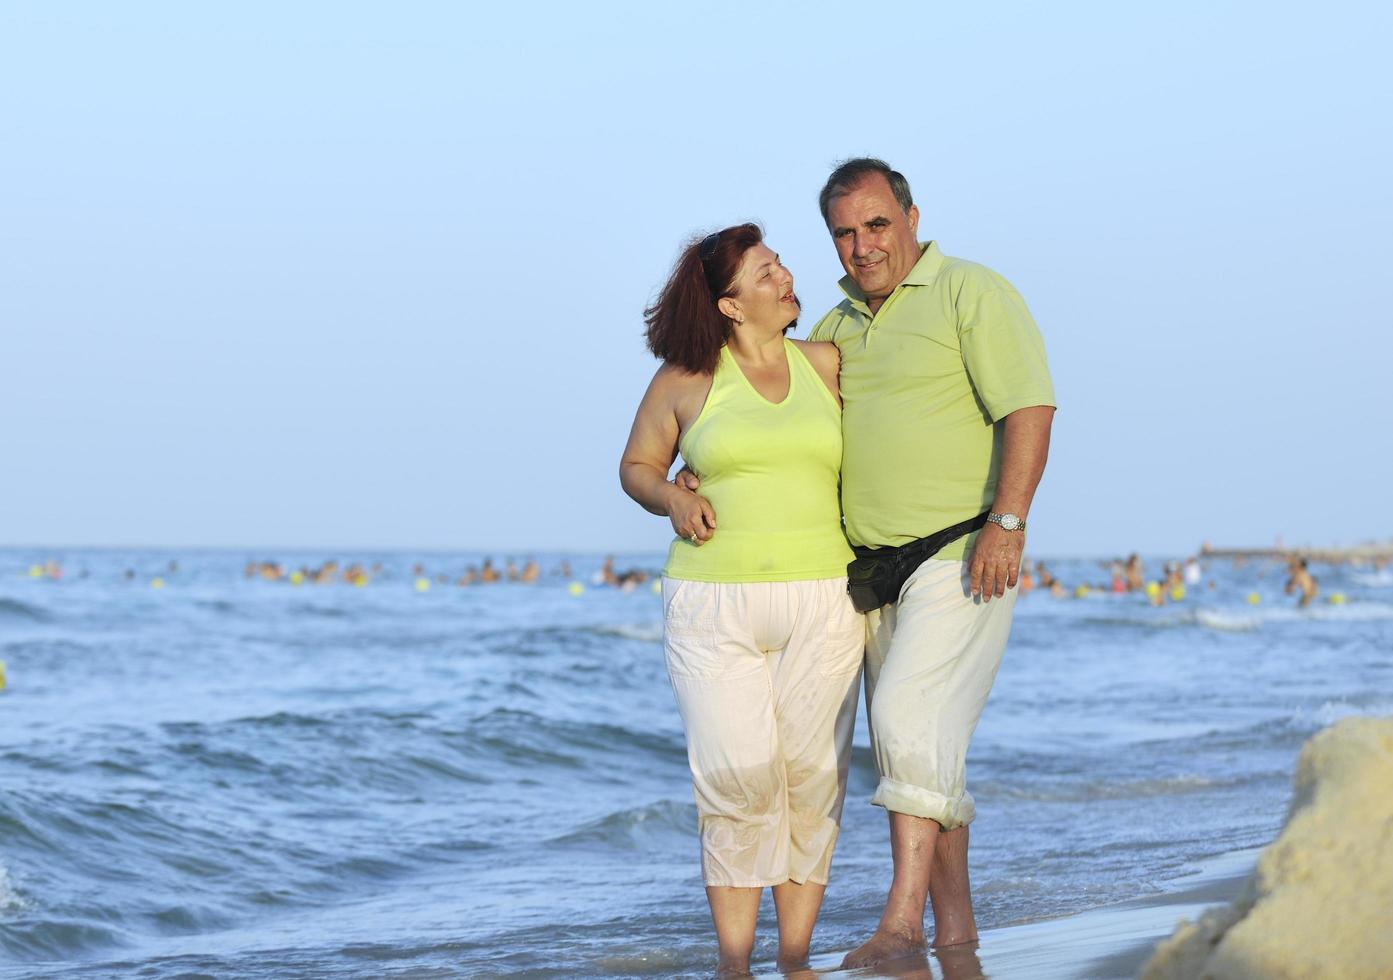 glückliches Seniorenpaar am Strand foto